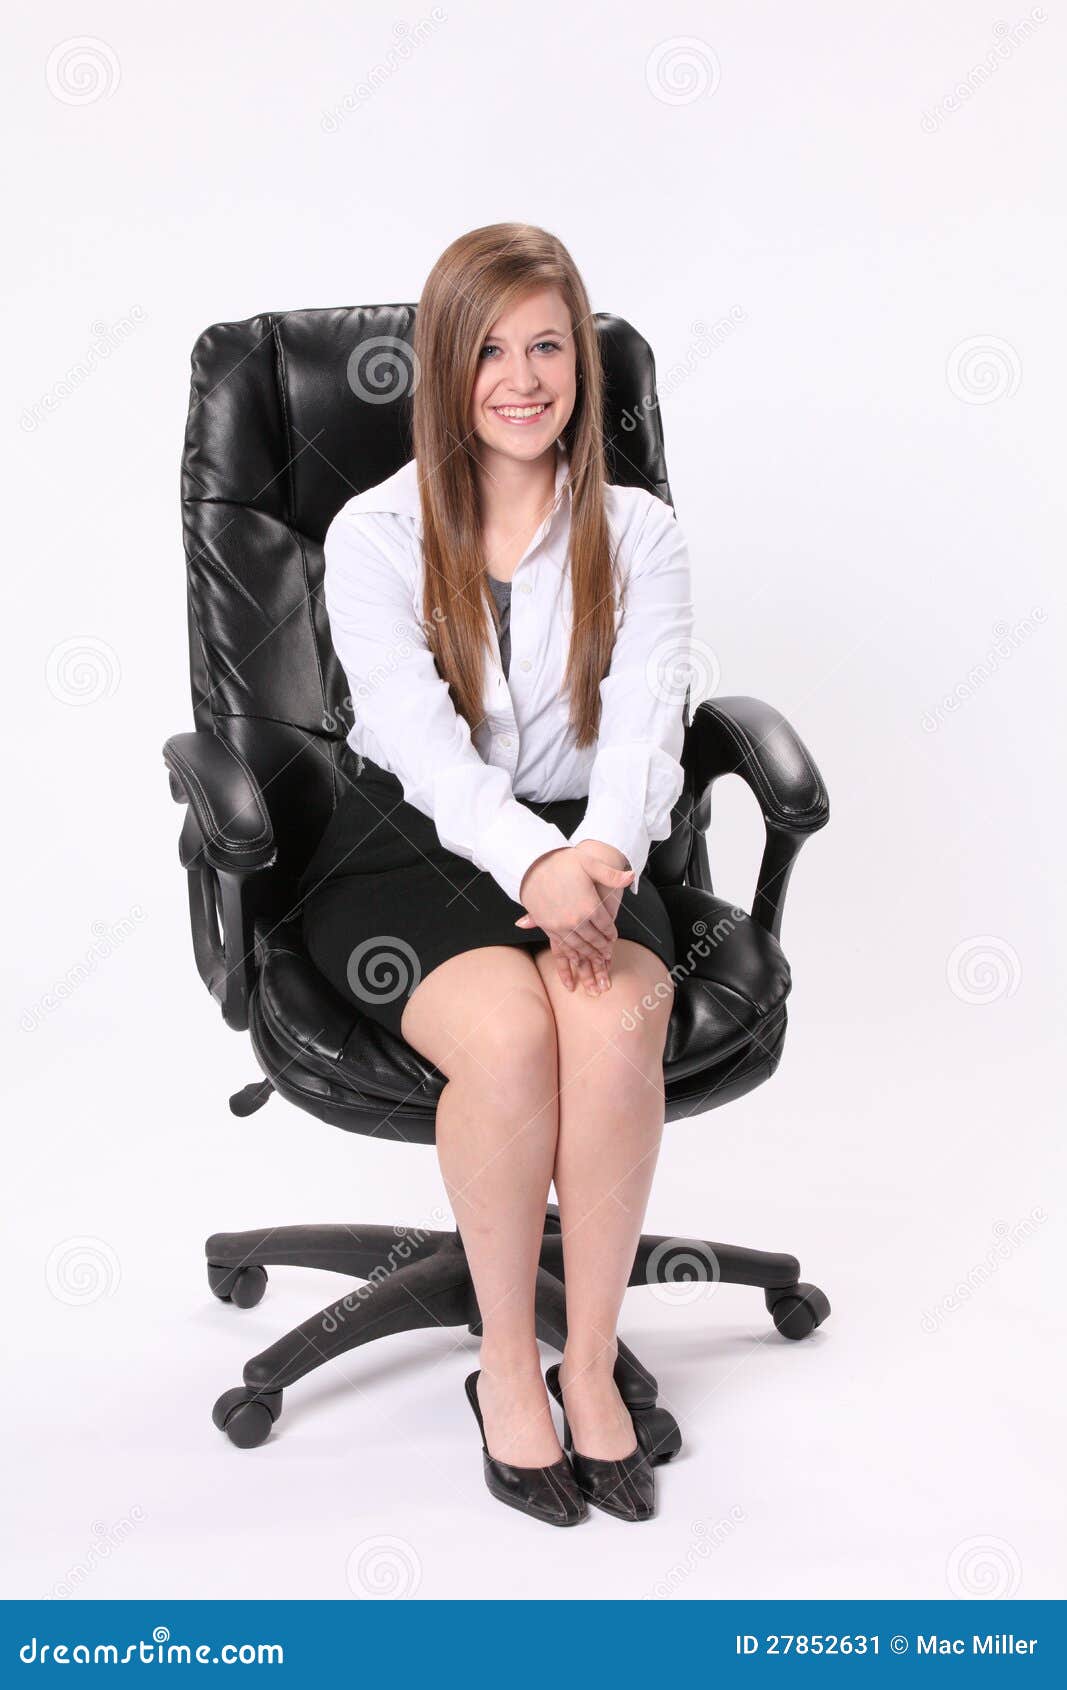 坐在转椅的小女孩 库存图片. 图片 包括有 愉快, 子项, 剪切, 表达式, 一个, 白种人, 纵向, 工作室 - 91894611